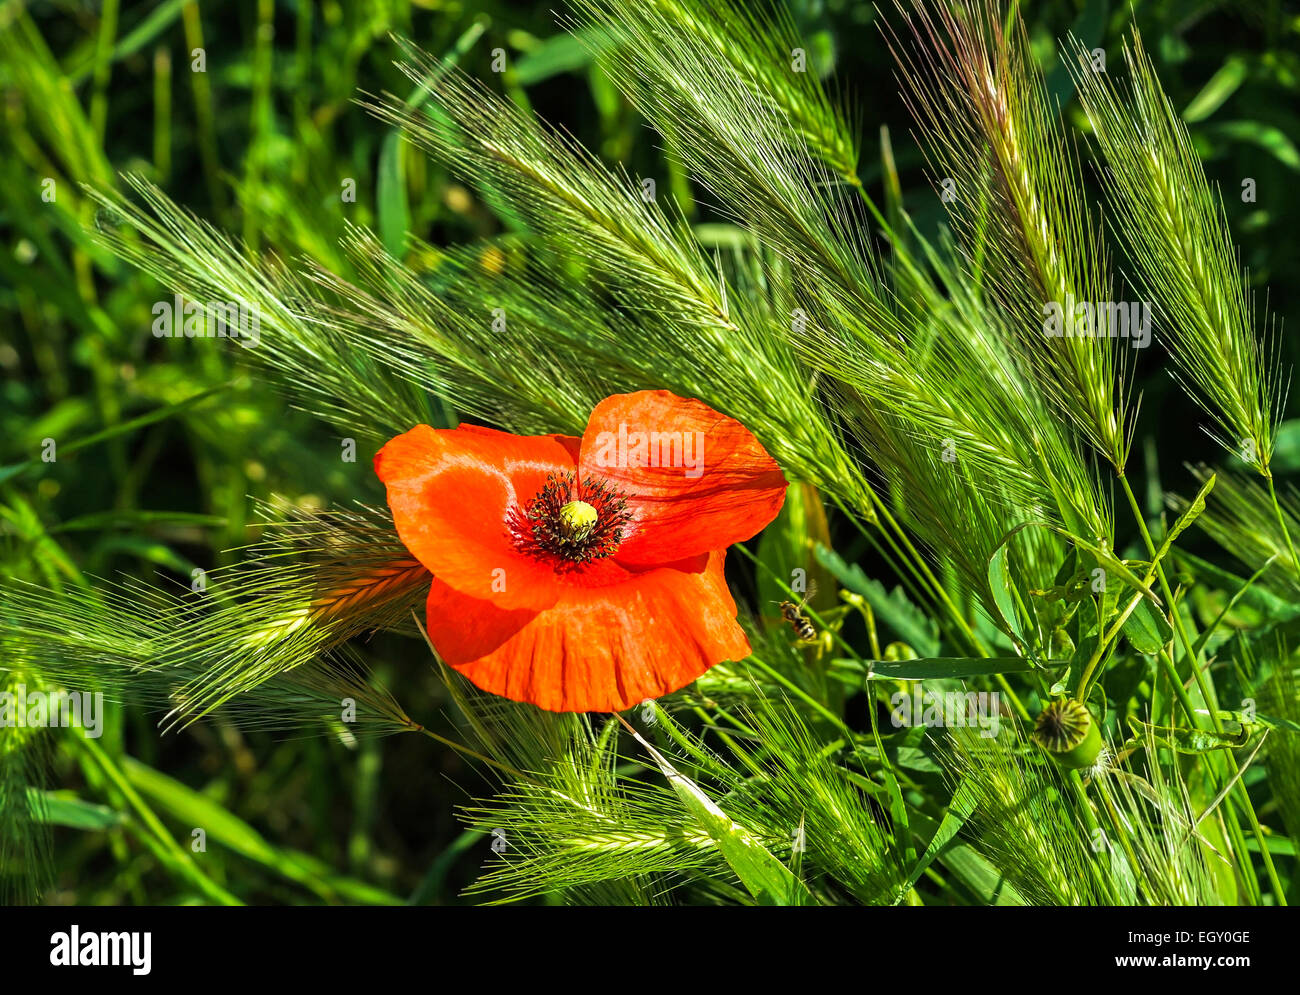 Poppy flower in the wheat field Stock Photo